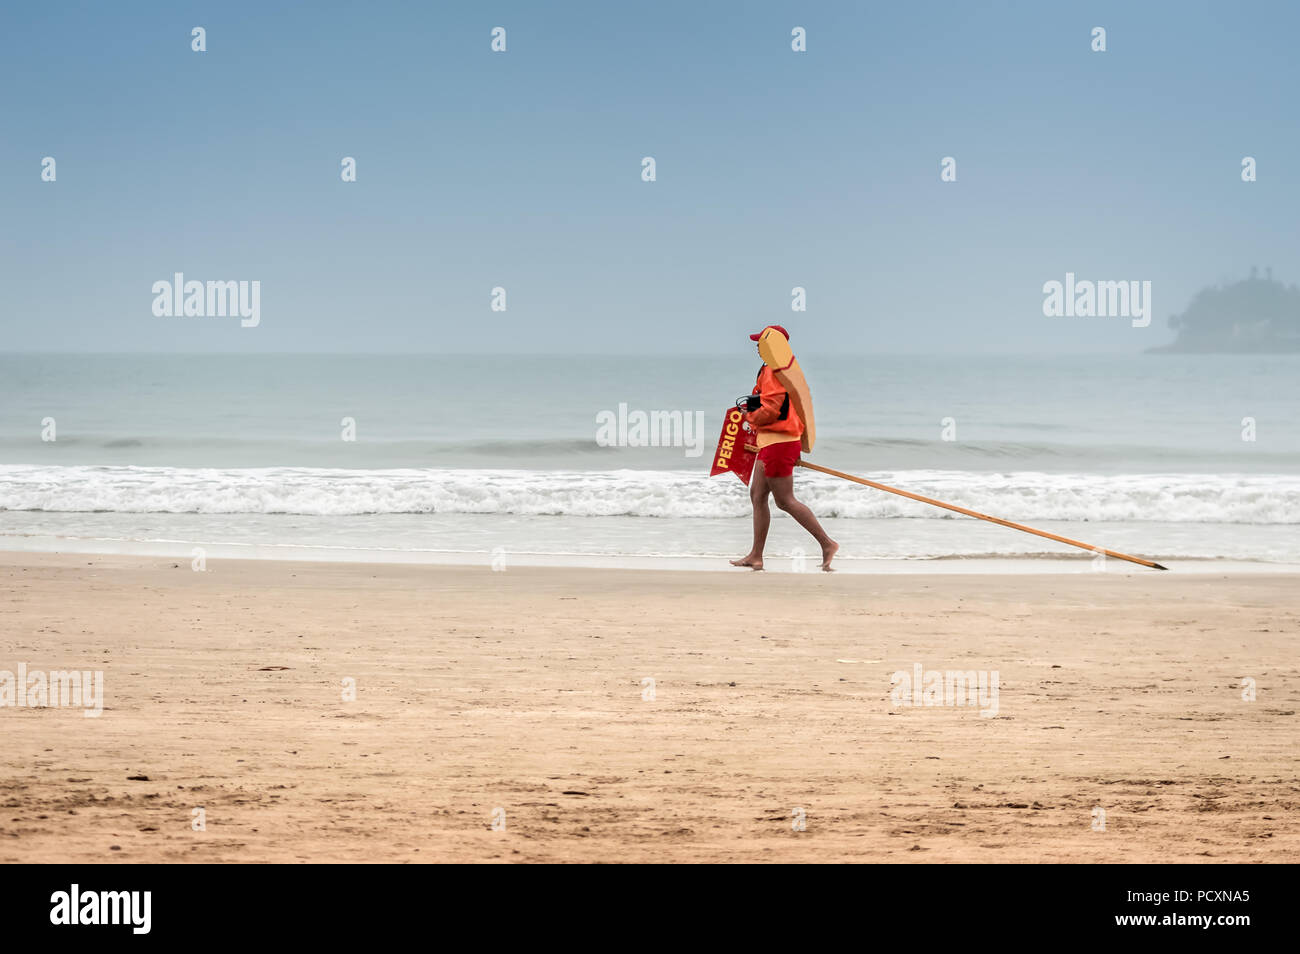 Life guard marche sur la plage par une journée ensoleillée Banque D'Images